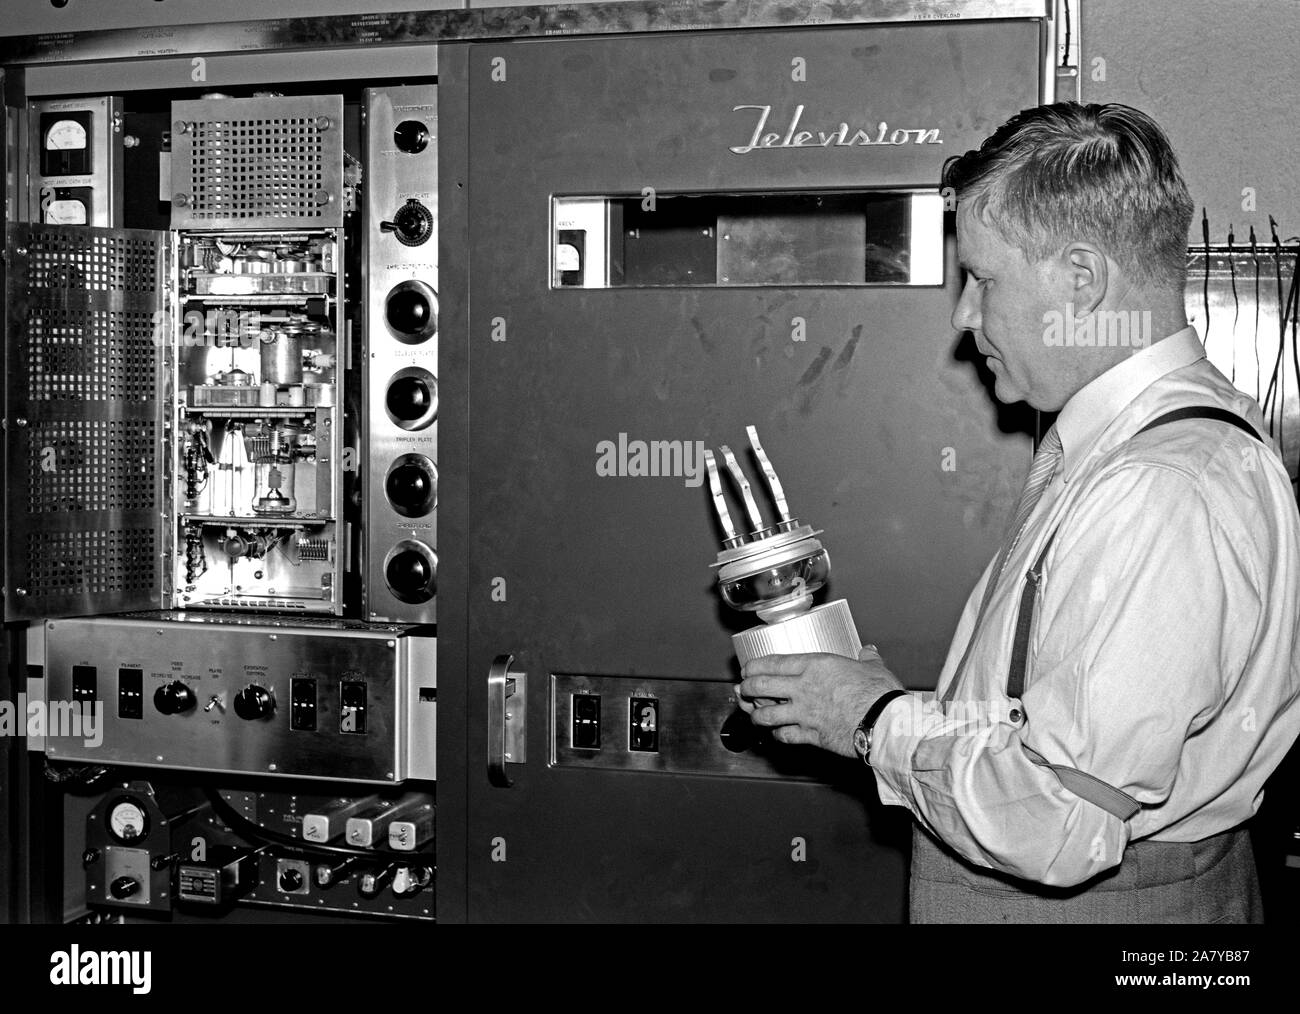 Yleisradio. Televisiotoiminnan alku. Yleisradion omalla työpajalla on Yhdysvalloista  29.6.1956 saapunut televisiolähetin viritettävänä ja työtä johtaa insinööri Lauri Häkkinen.  Hän seisoo RCA:n televisiolähettimen (tyyppimerkintä RCA TT-2AH) kuvaosakaapin edessä  ja hänellä on kädessään kuvalähettimen pääteputki (tyyppimerkintä on 7C24) eli tehotriodi  jolla kehitettiin antenniin menevän kuvasignaalin 2 kW teho. Pääteputki oli myös RCA :n  omaa tuotantoa. Stock Photo